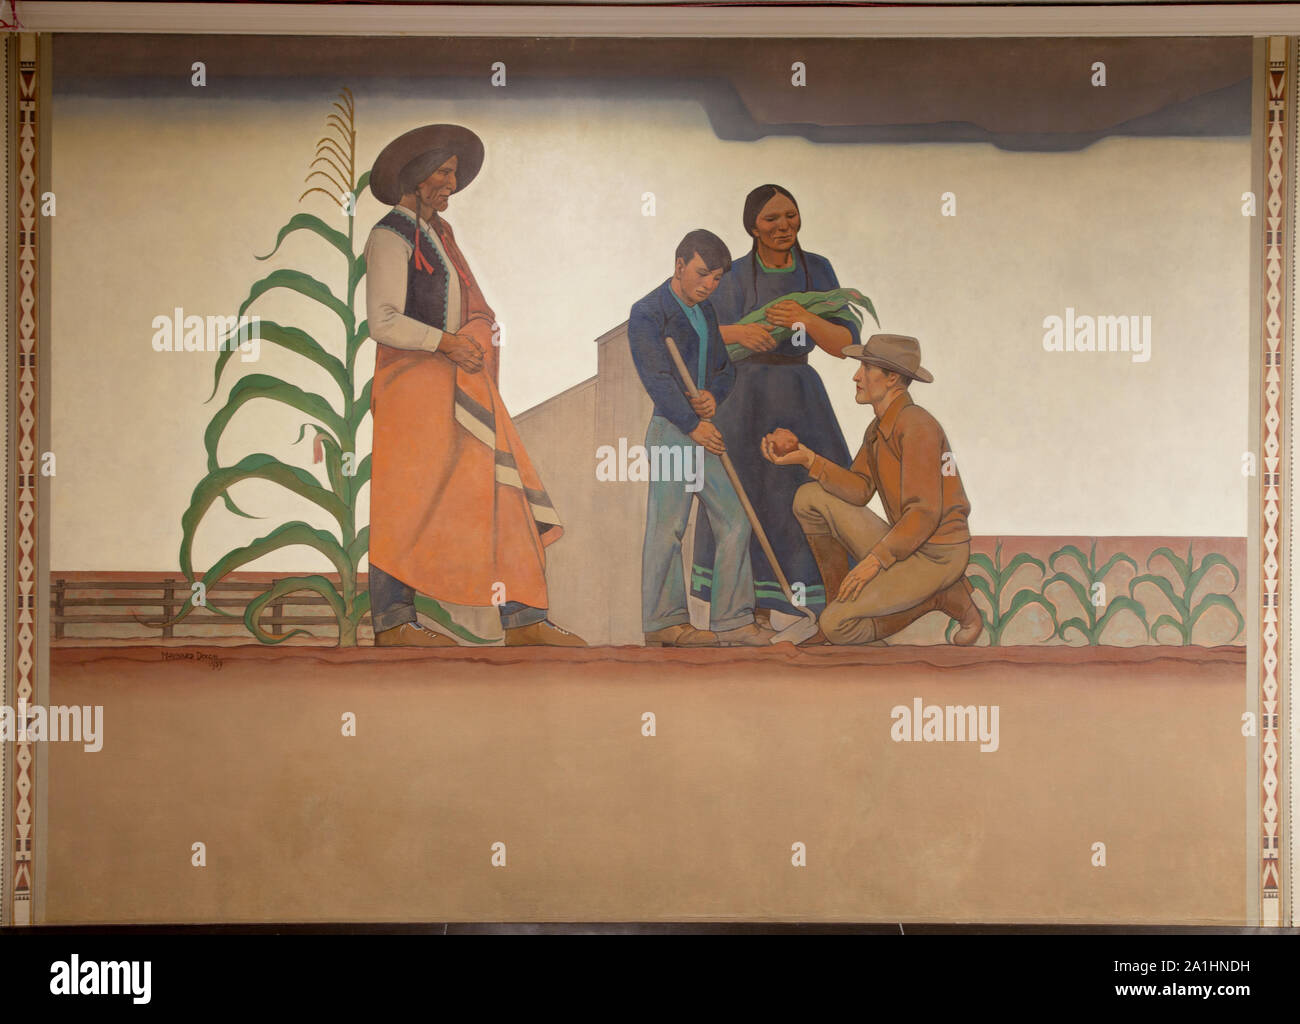 Murale Bureau of Indian Affairs: Indiani & insegnante, da Maynard Dixon presso il Dipartimento dell'interno edificio, Washington, D.C. Foto Stock